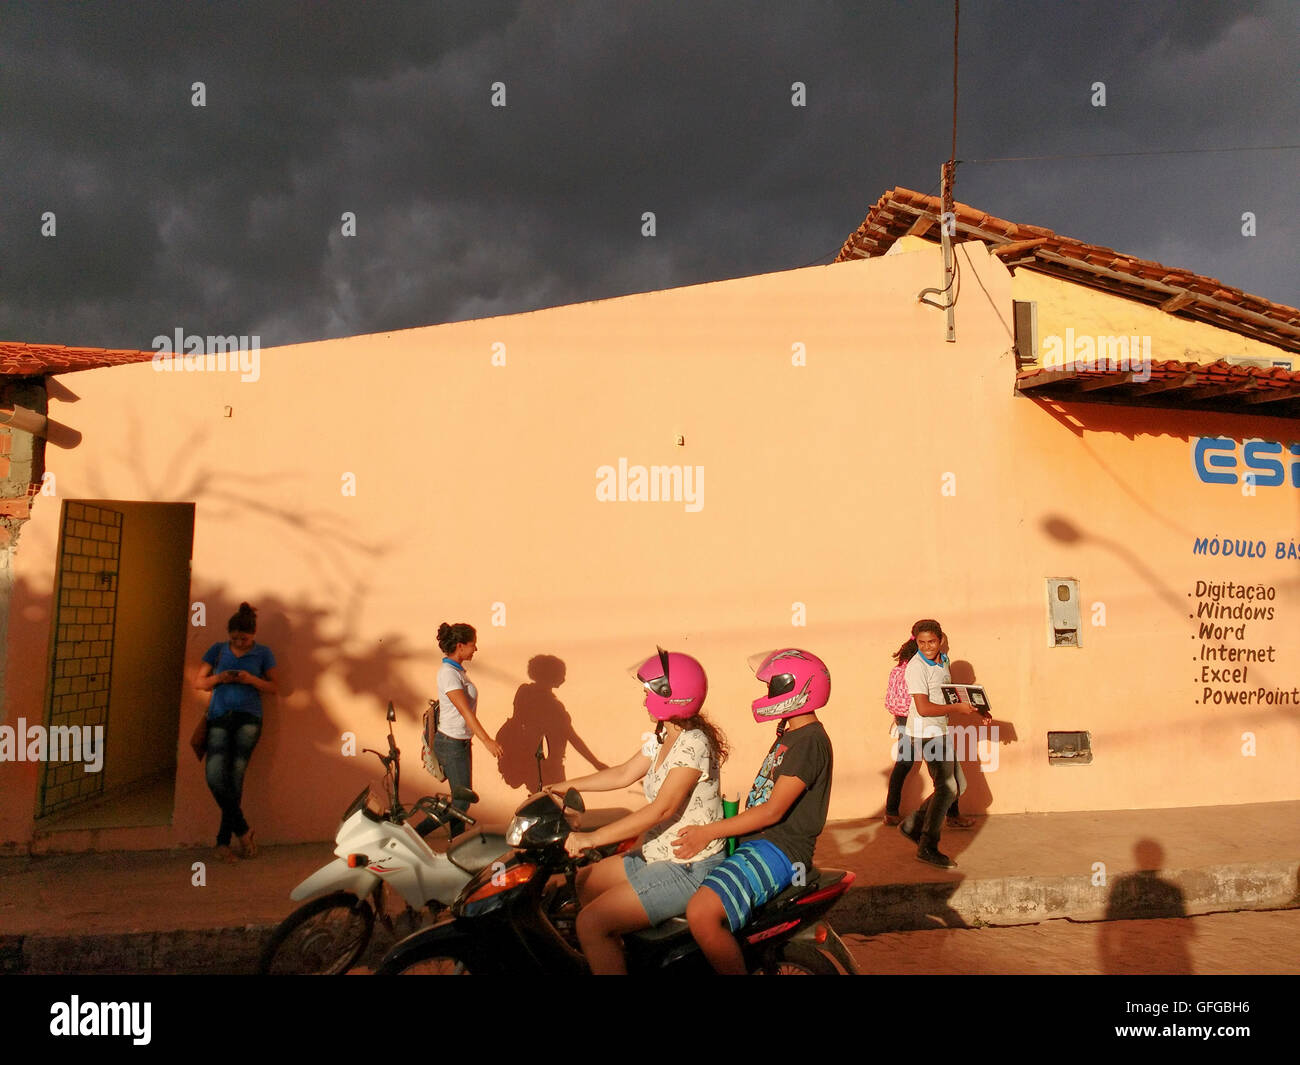 La vie quotidienne des paysages de rue avec des jeunes au Brésil Banque D'Images